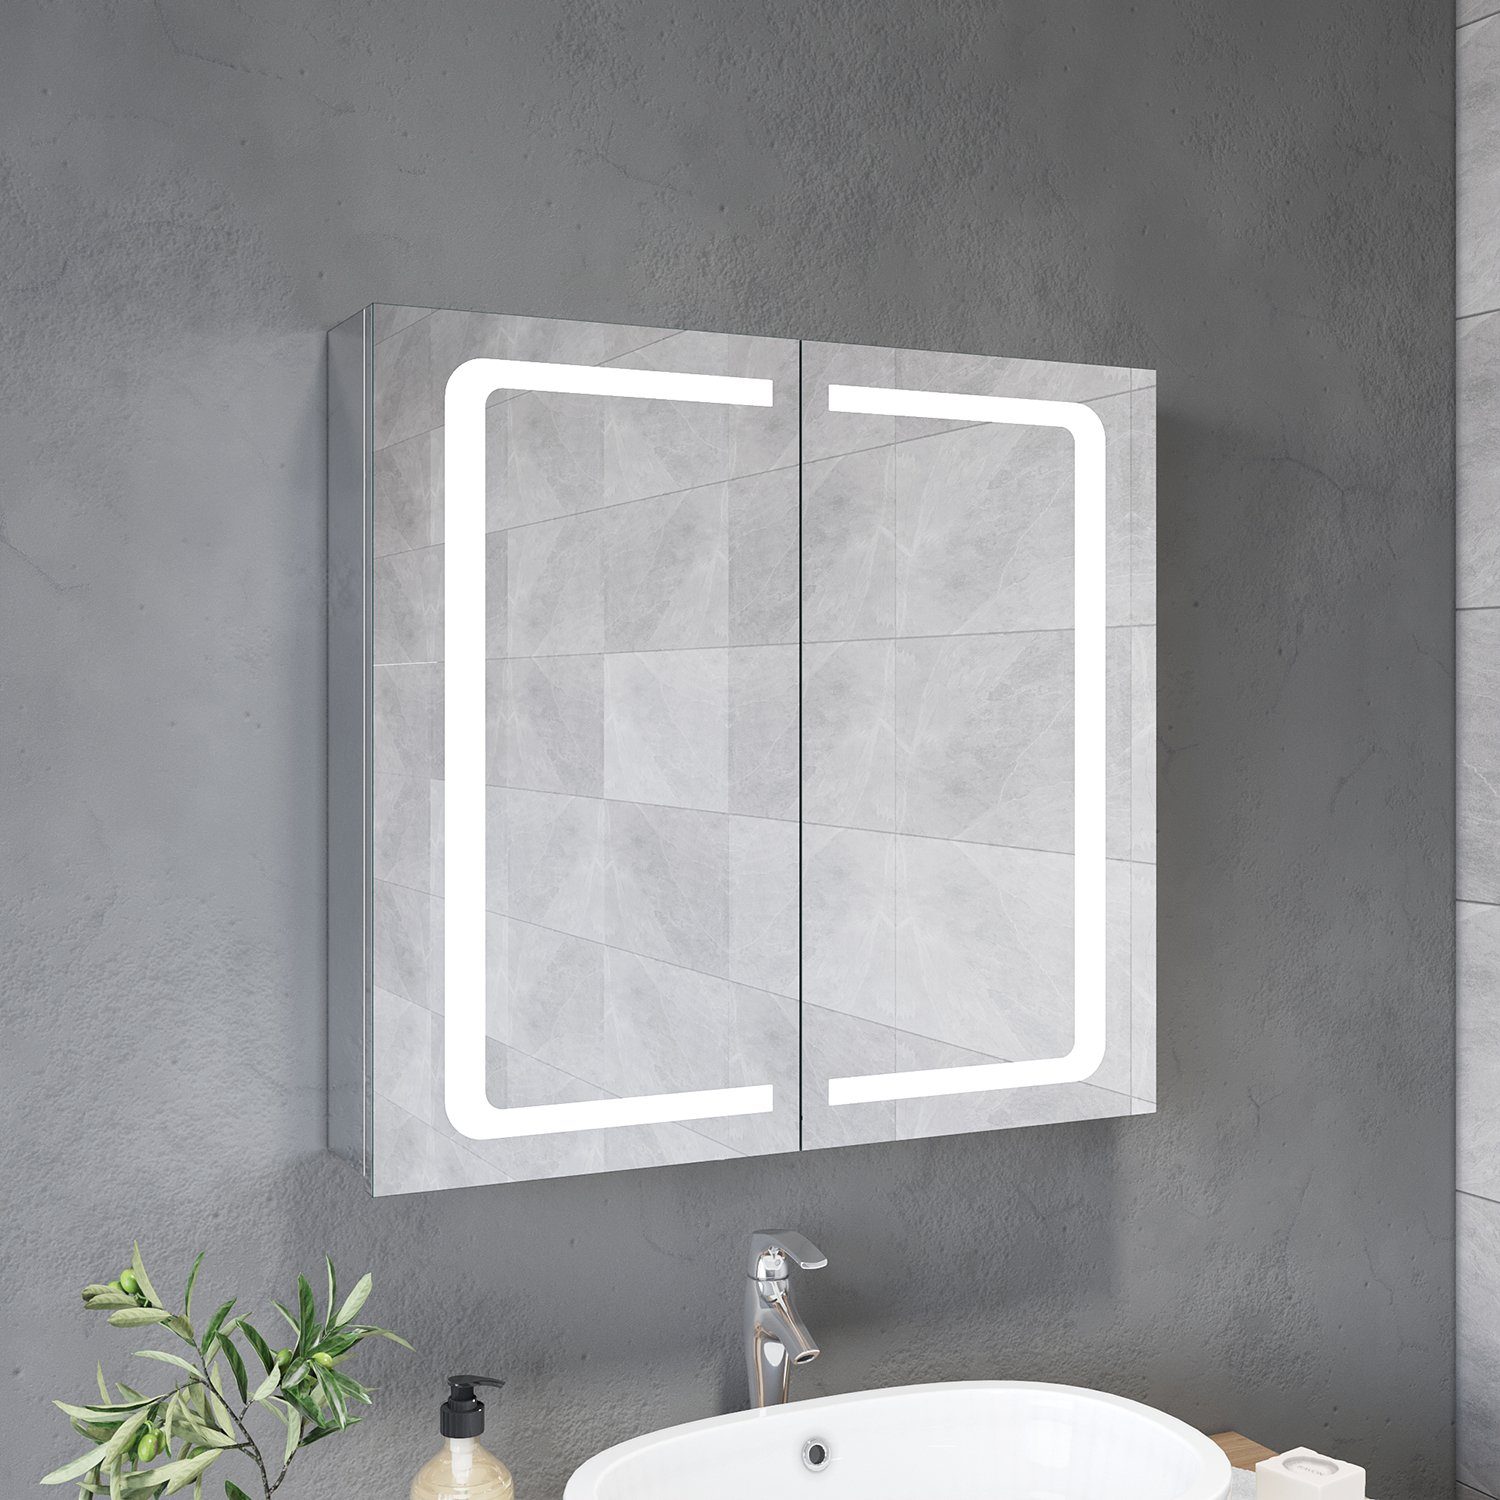 SONNI Badezimmerspiegelschrank Spiegelschrank 2-türig Bad Steckdose, Badschrank, LED Breite Beleuchtung Badezimmerspiegelschrank 70cm Badspiegel